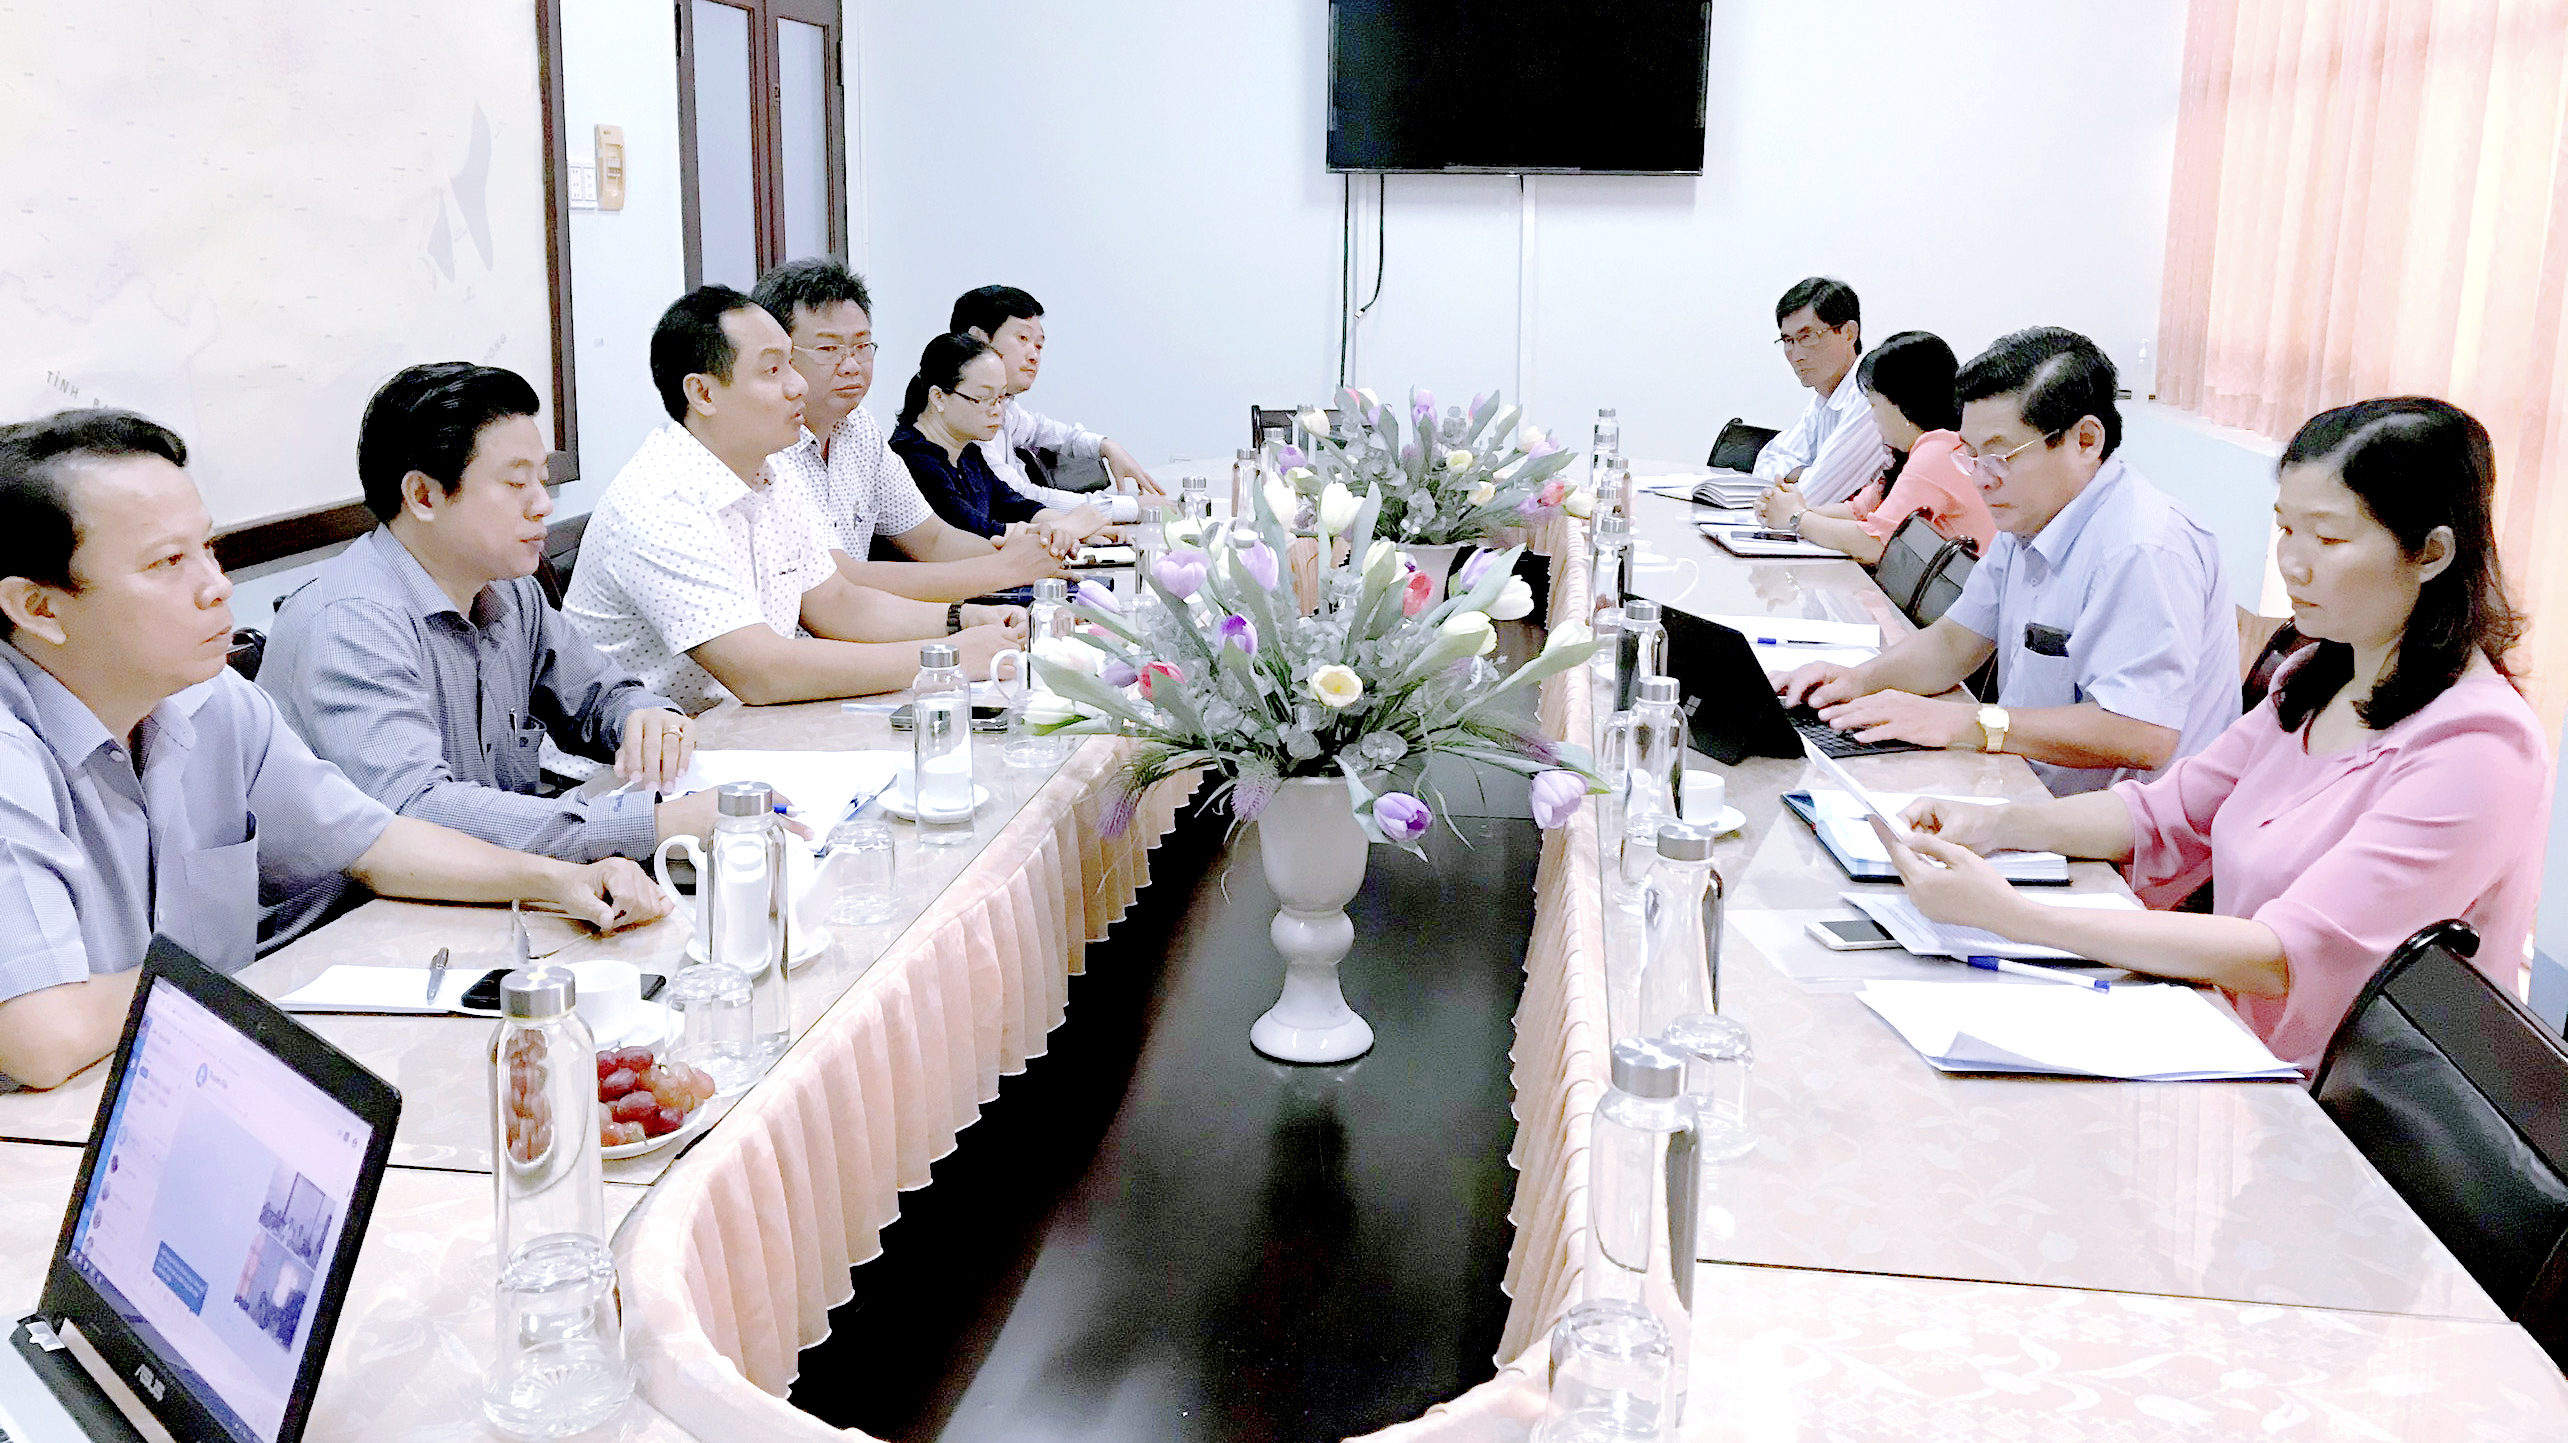 Trường Đại học Bạc Liêu làm việc với Sở Giáo dục & Đào tạo tỉnh Sóc Trăng trong công tác tuyển sinh, đào tạo nguồn nhân lực.